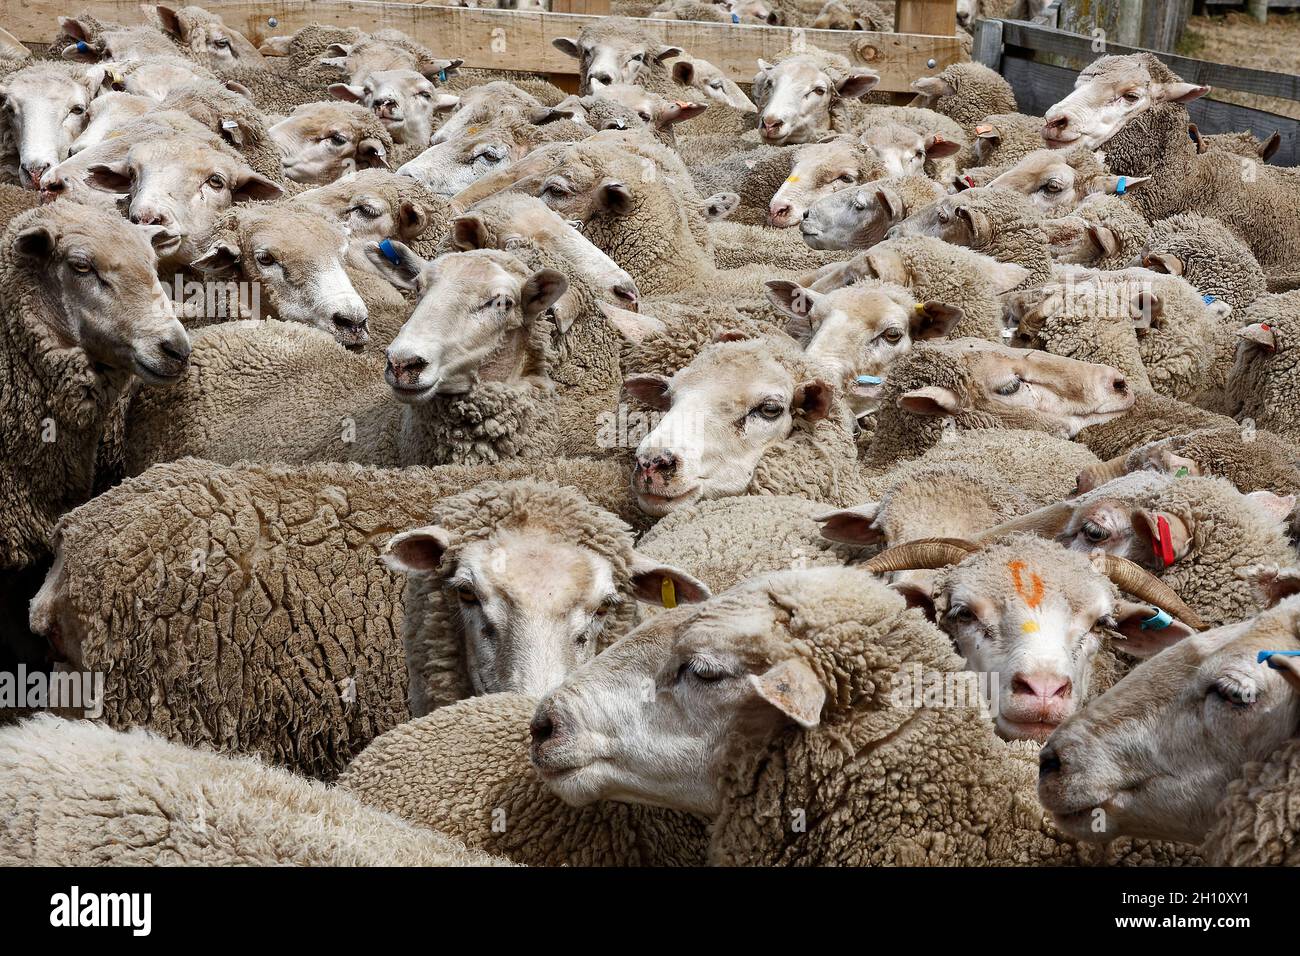 Viele Schafe, verstrikt, dicht beieinander, verschiedene farbige Ohrmarken, Wollsortierung, Schafstation, Tiere, Geschäft, Südinsel, Neuseeland Stockfoto